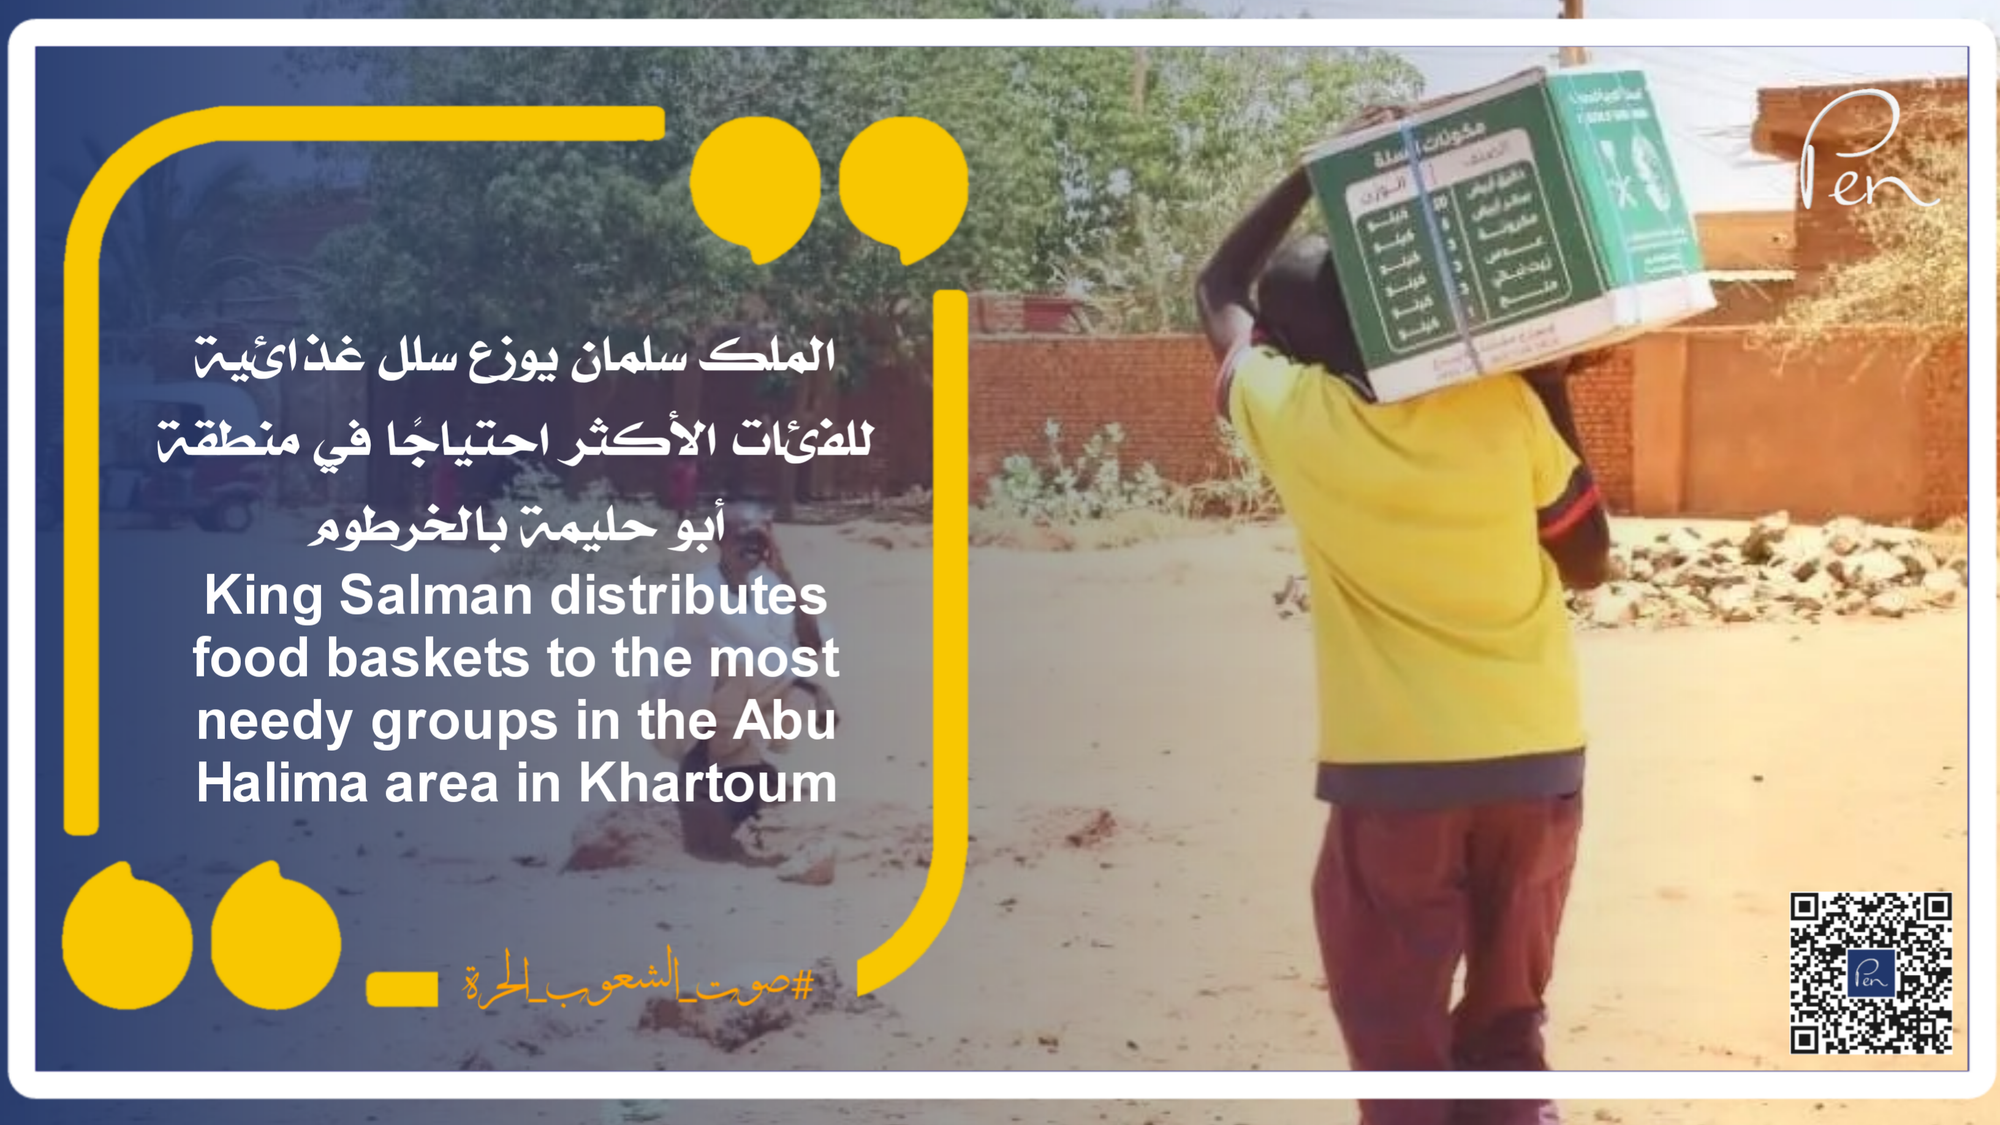 الملك سلمان للإغاثة يوزع سلل غذائية للفئات الأكثر احتياجًا في منطقة أبو حليمة بالخرطوم